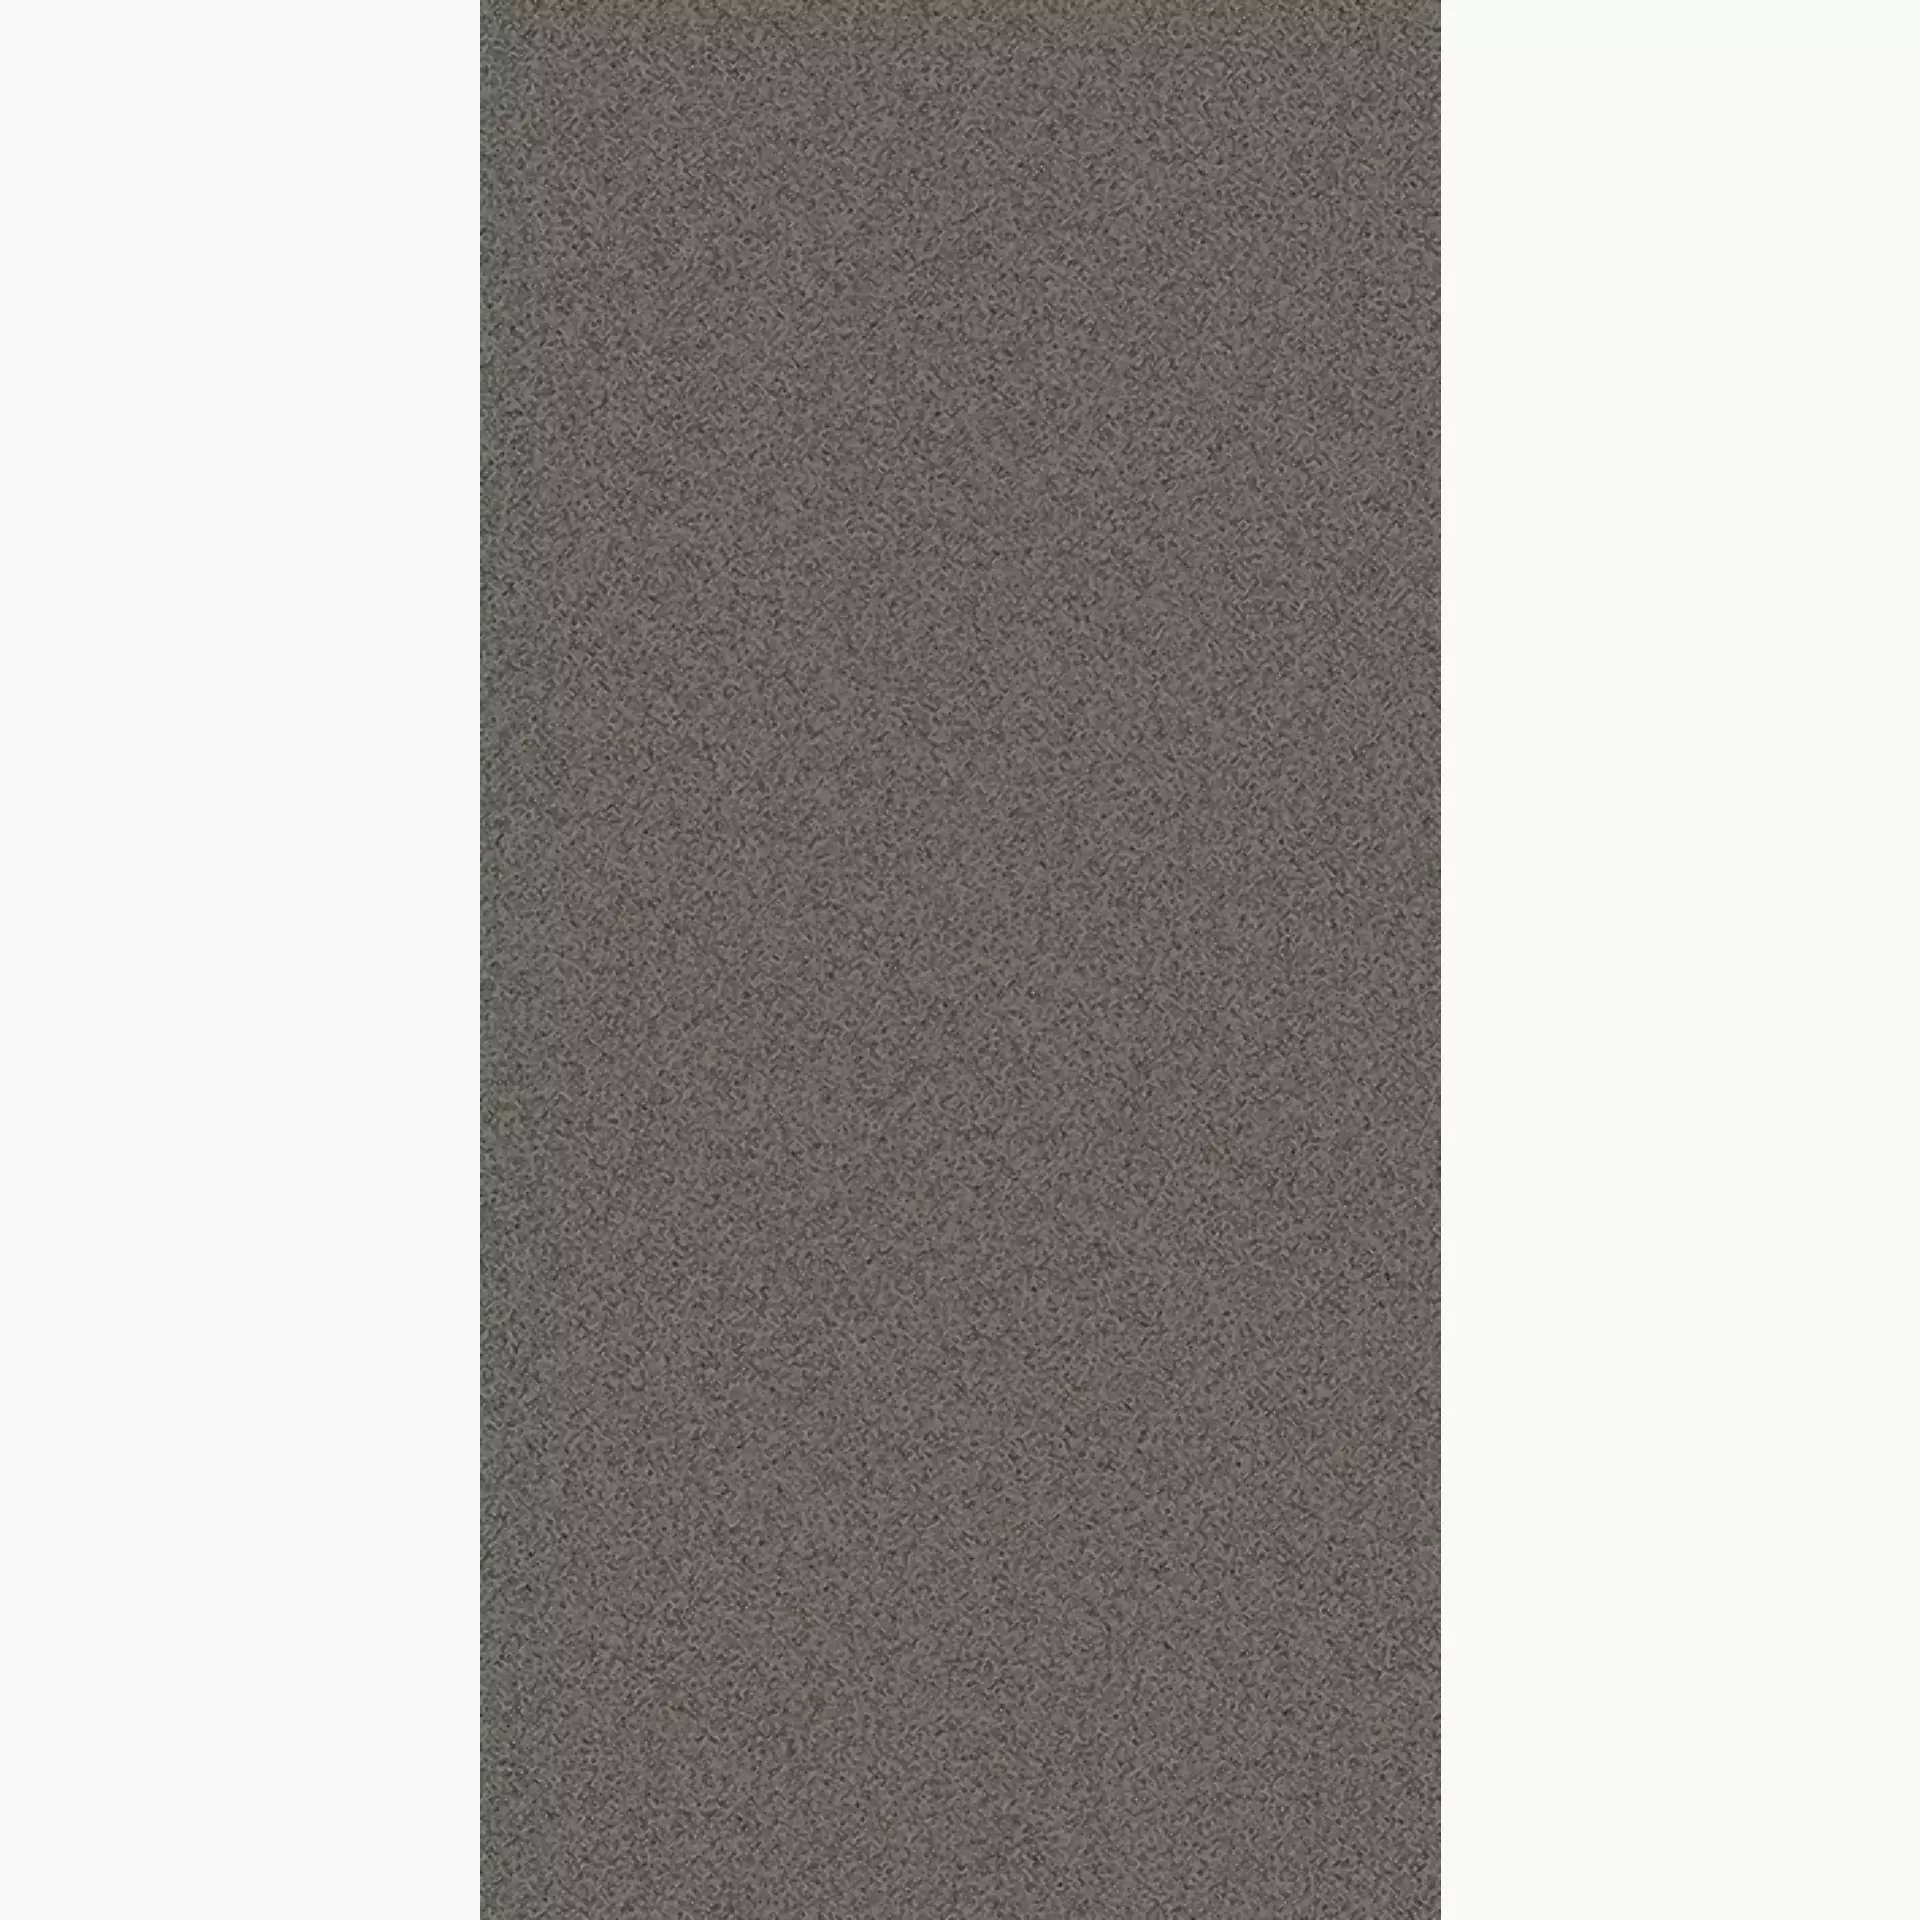 Wandfliese,Bodenfliese Villeroy & Boch Pure Line 2.0 Concrete Grey Matt Concrete Grey 2754-UL62 matt 30x60cm rektifiziert 12mm